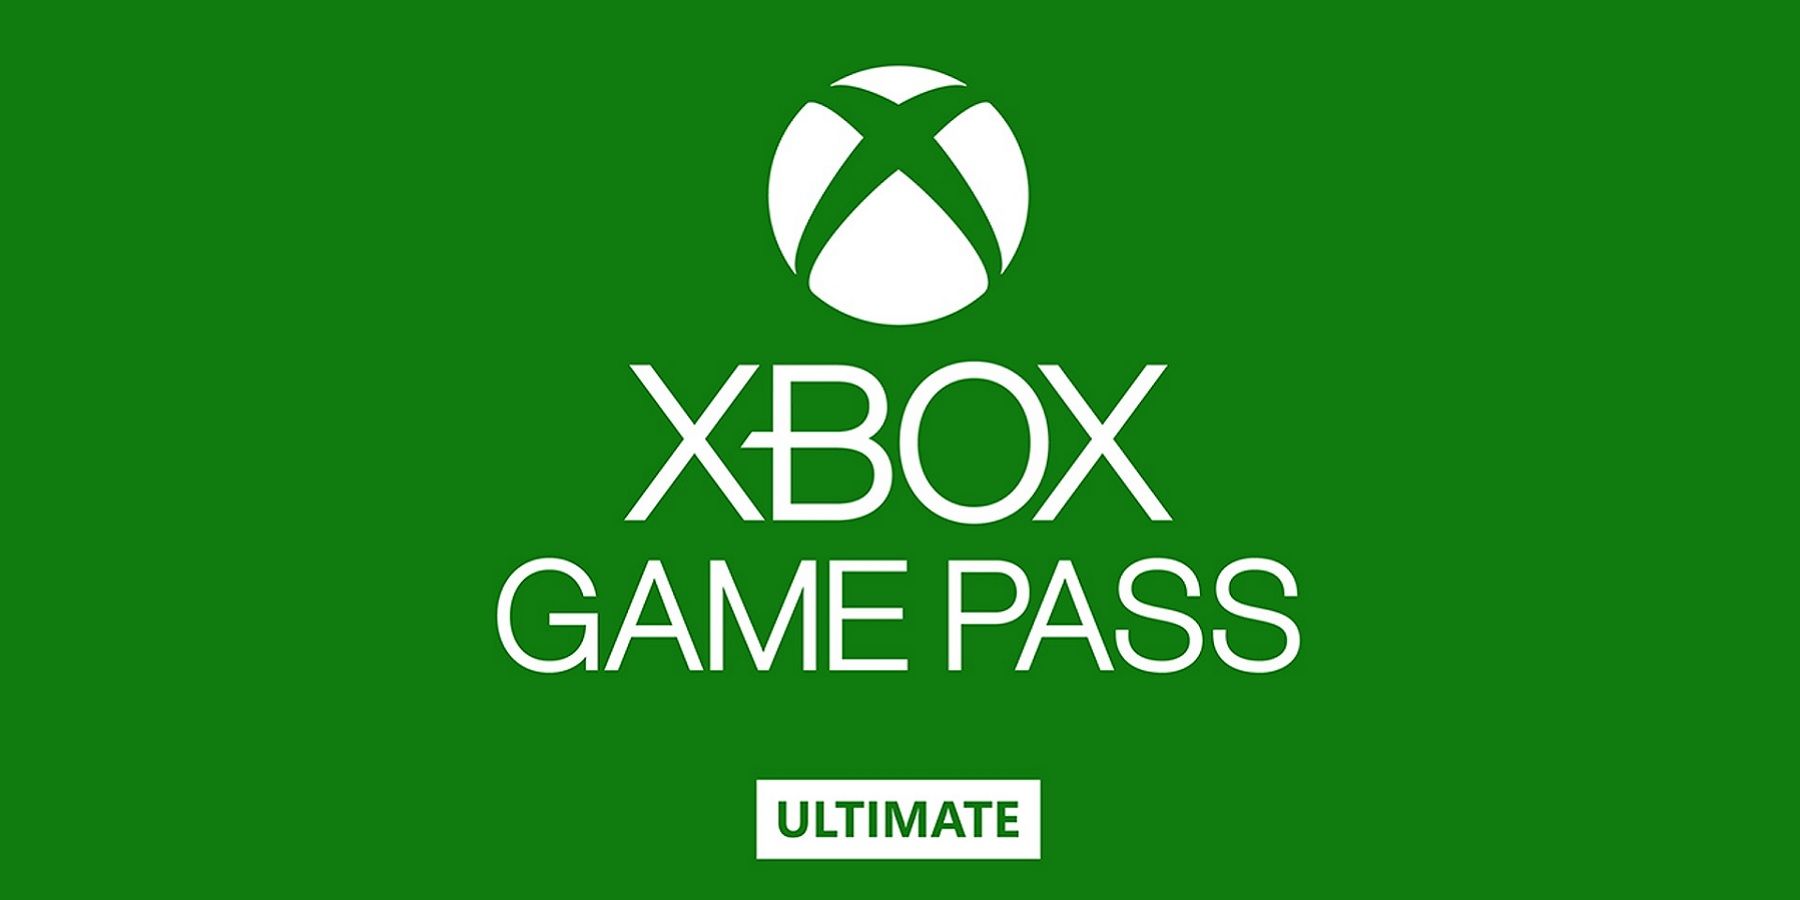 Xbox Game Pass Ultimate добавляет 2 новых игры